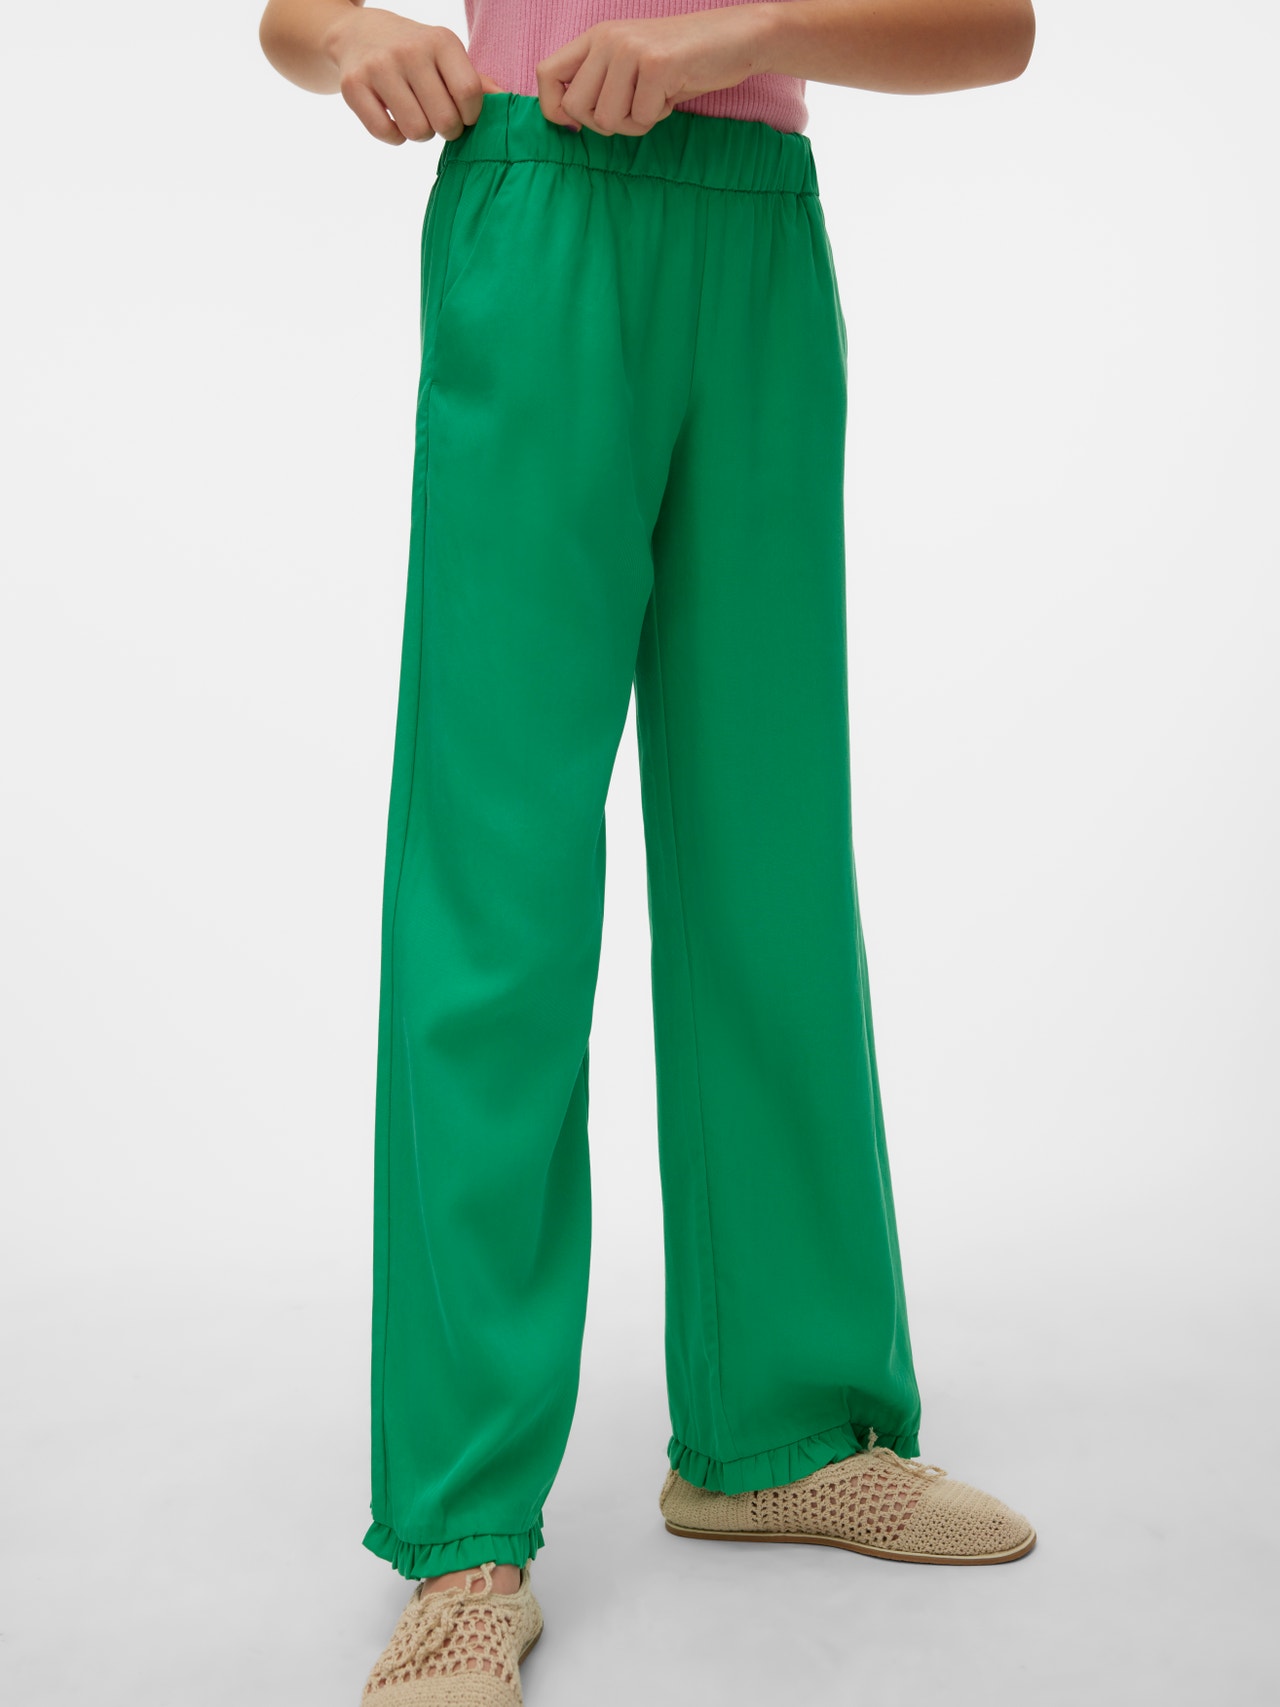 Vero Moda VMHARPER Trousers -Bright Green - 10283853